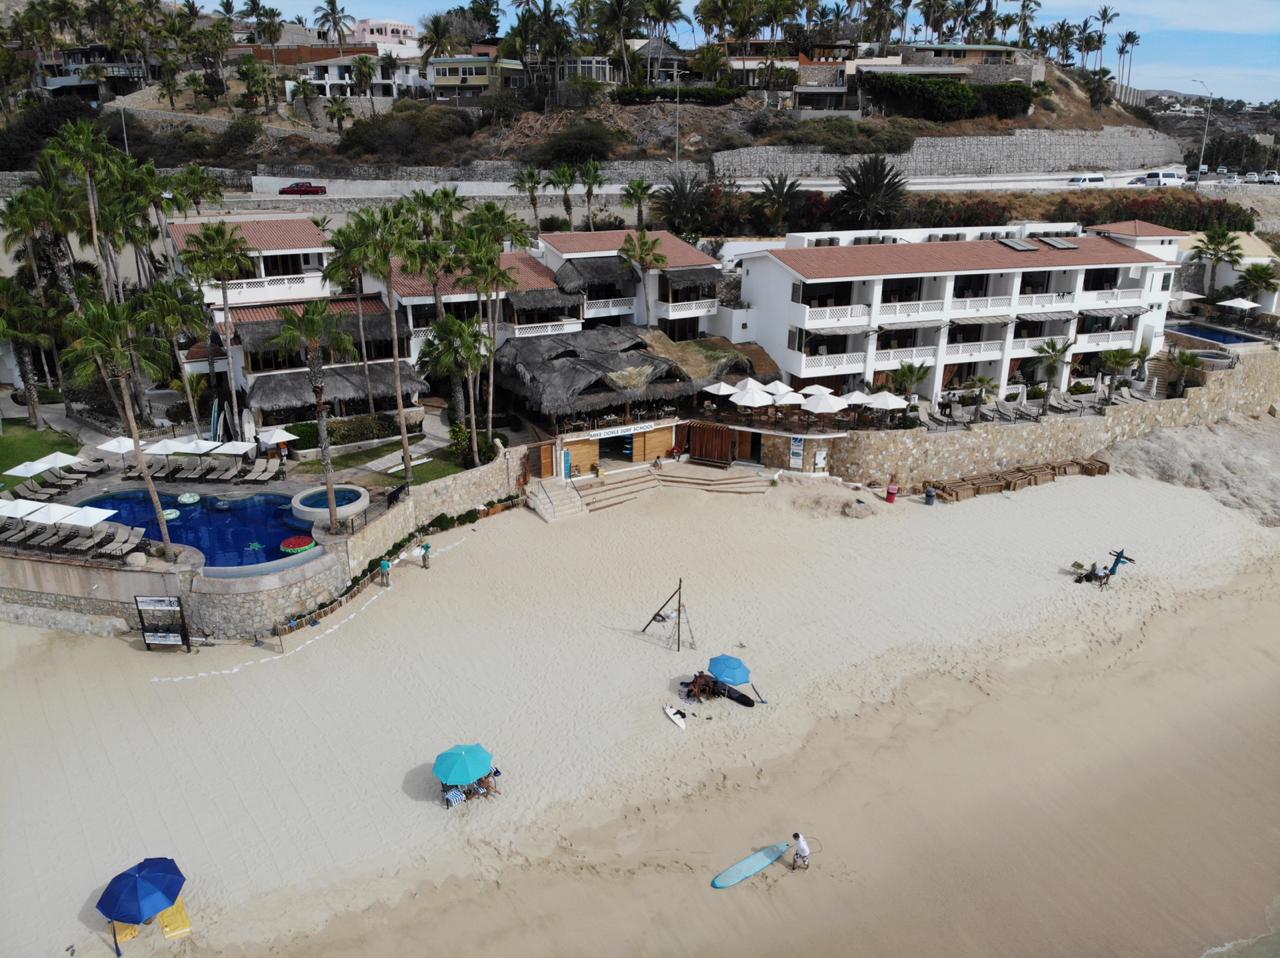 Playa Acapulquito'in fotoğrafı - rahatlamayı sevenler arasında popüler bir yer